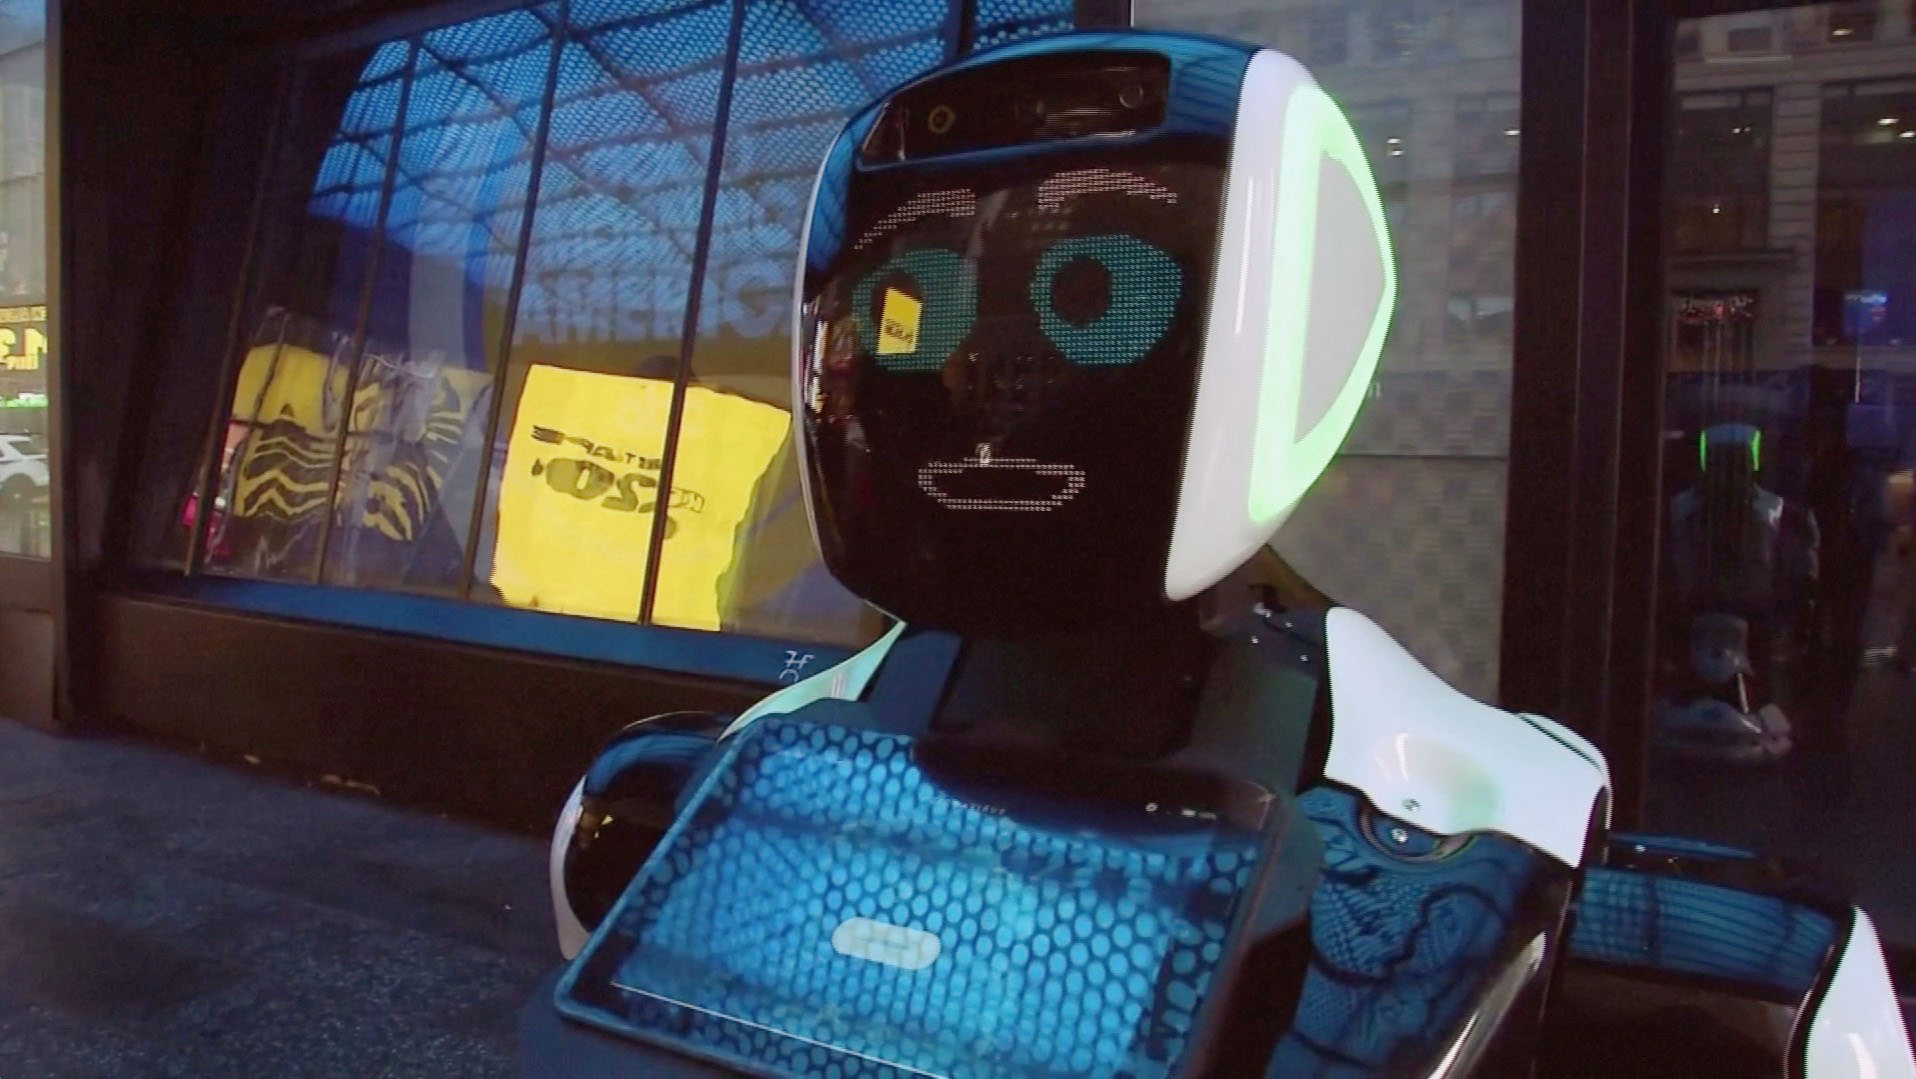 Κοροναϊός: Ρομπότ δίνει πληροφορίες για τον ιό στην Times Square